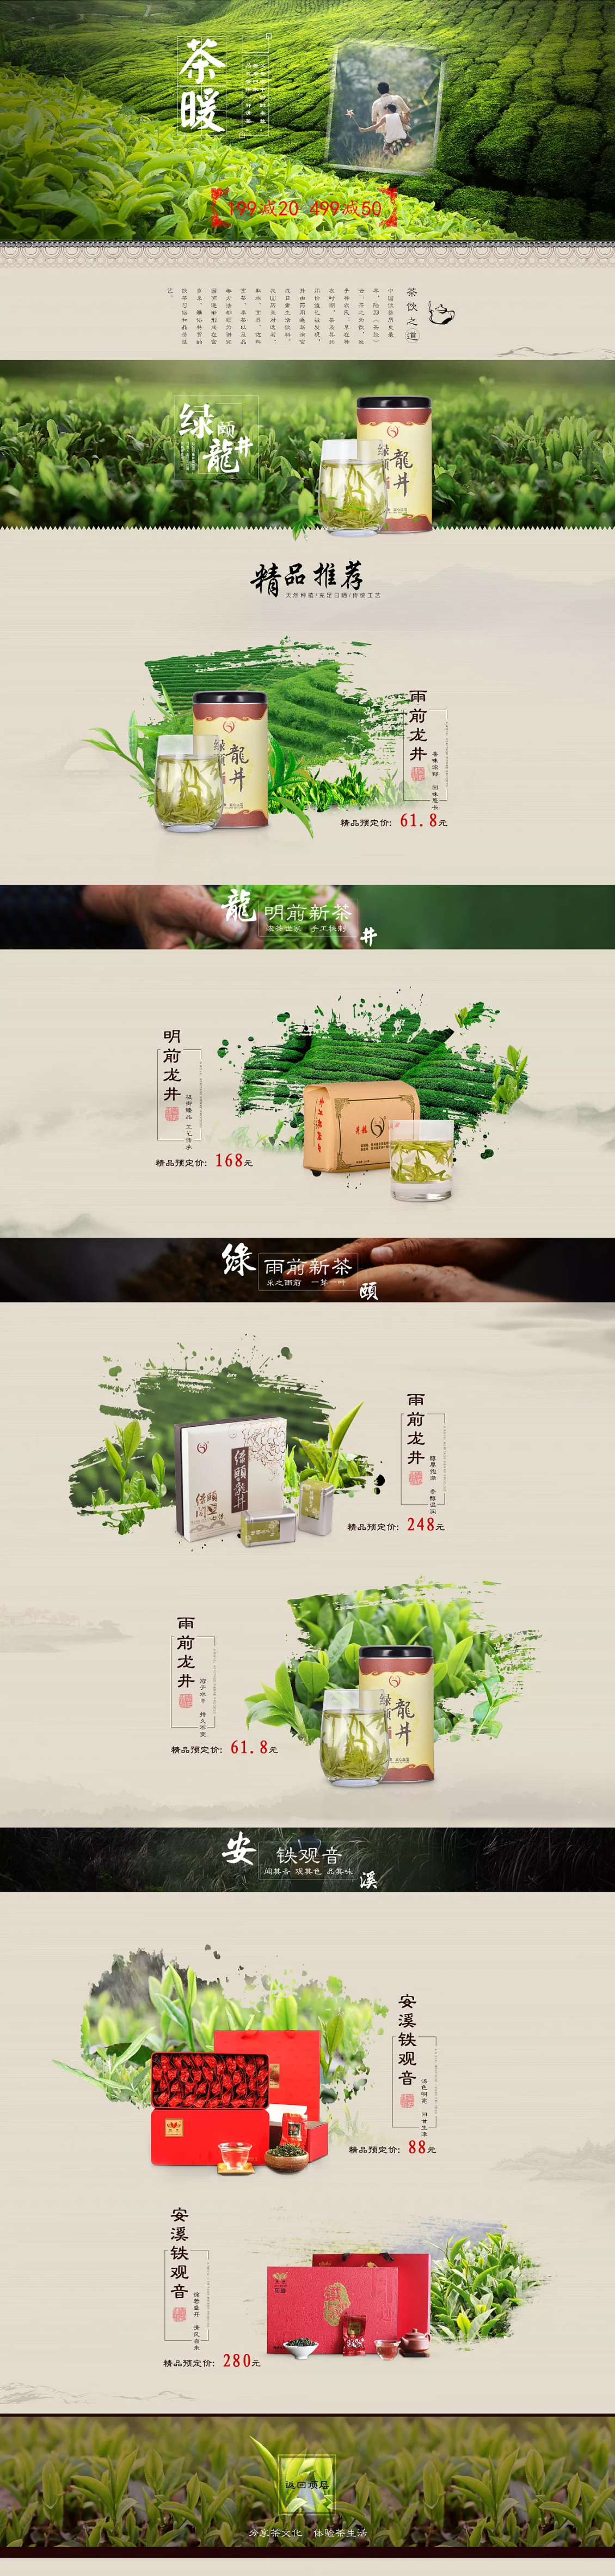 淘宝美工亚丁中国风清新大气茶首页设计作品